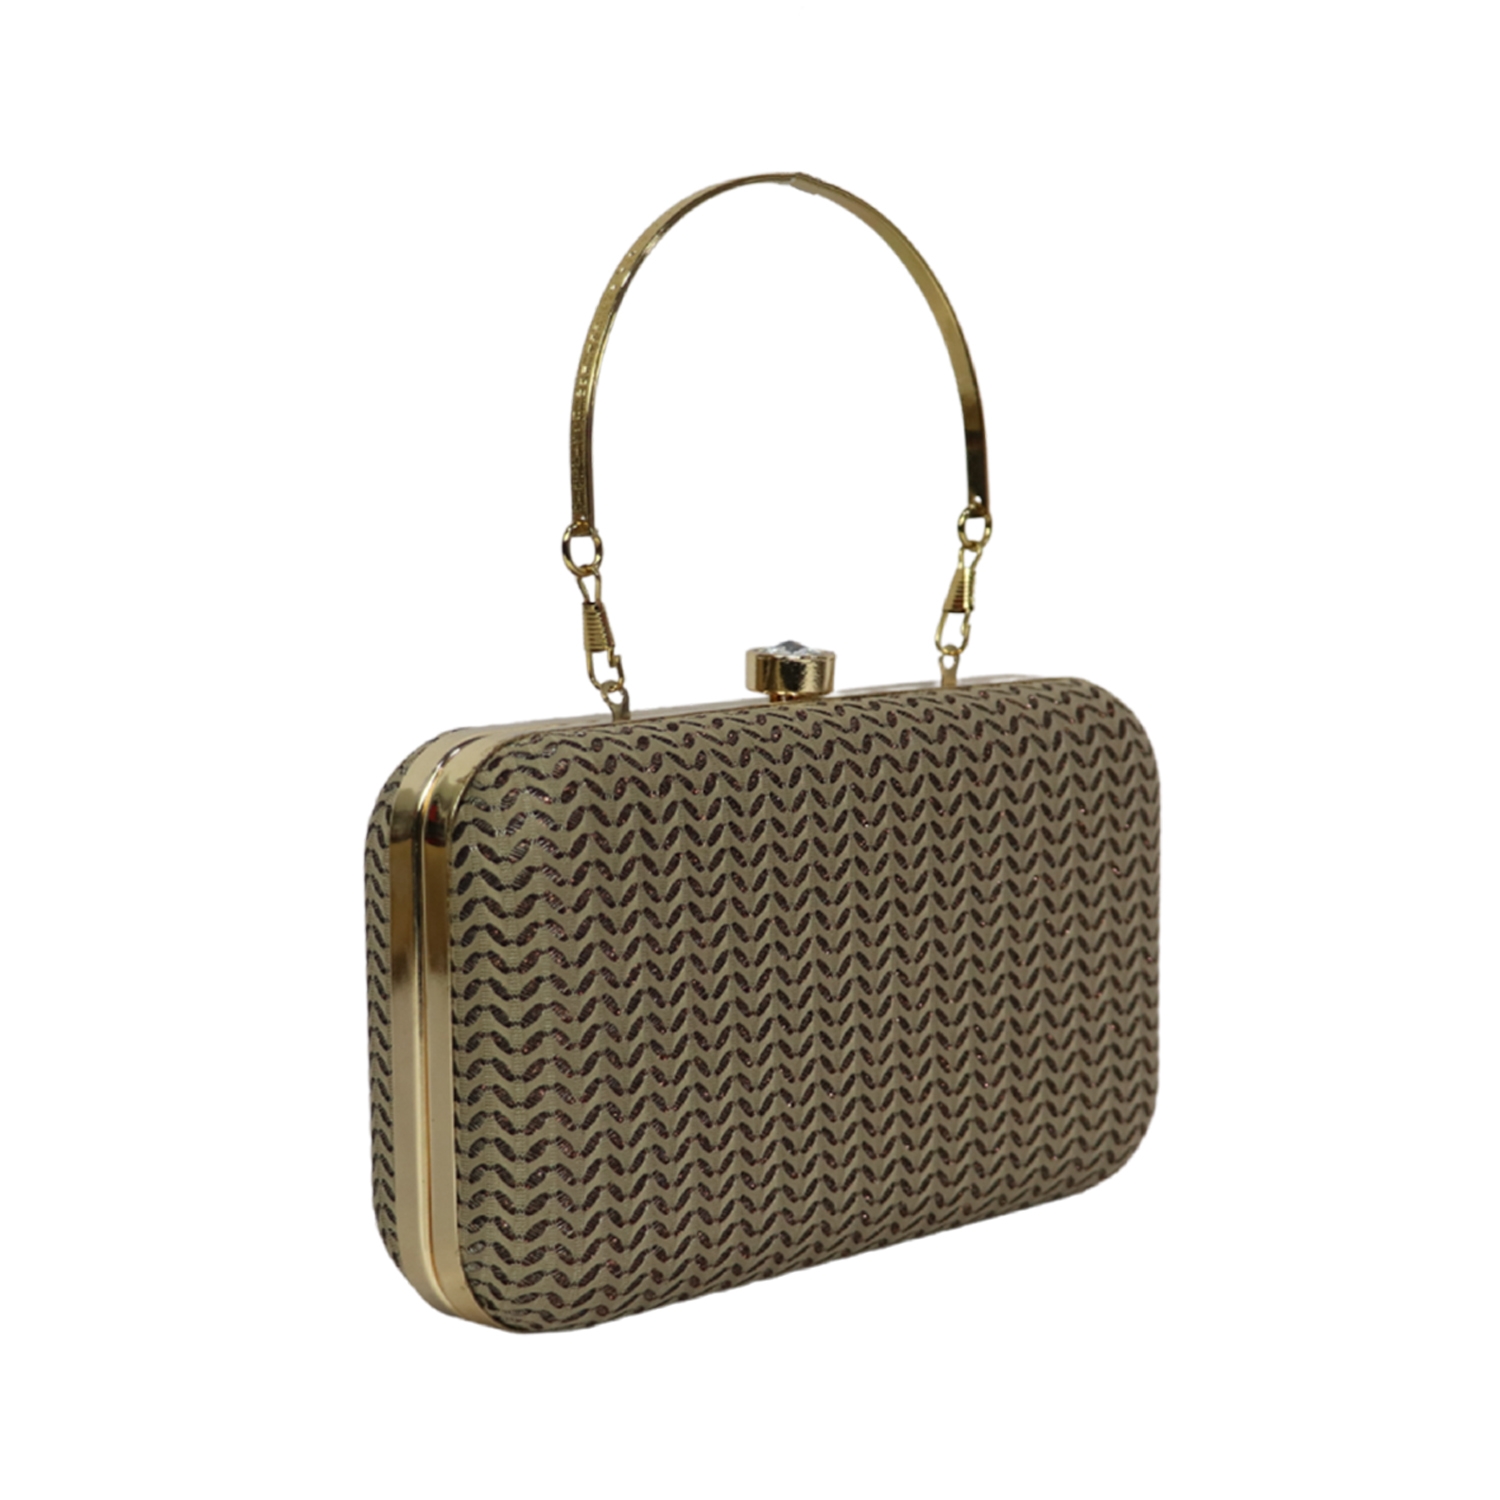 EMM | Wedding box clutch purse with handle 2